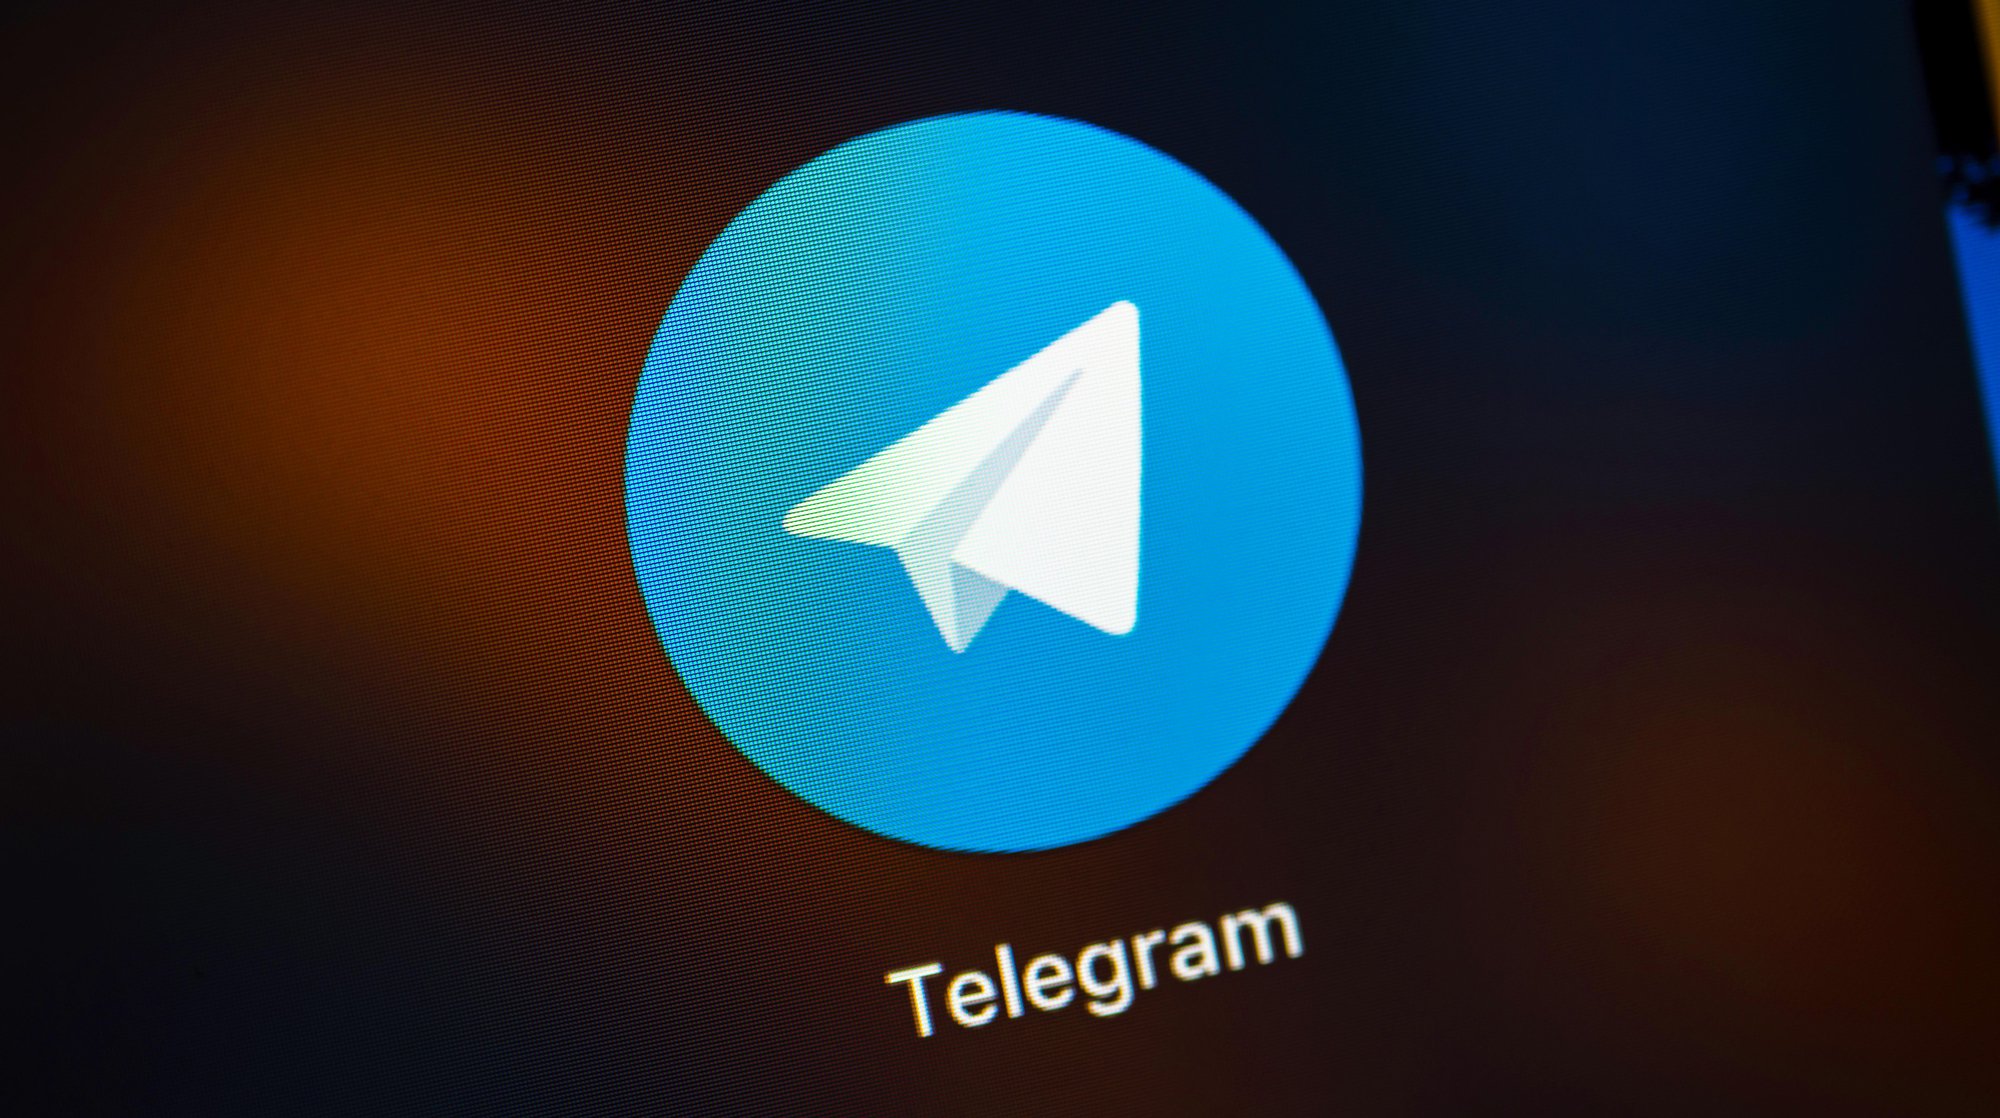 Dailystorm - Telegram оштрафован на 800 тысяч рублей за отказ сотрудничать с ФСБ